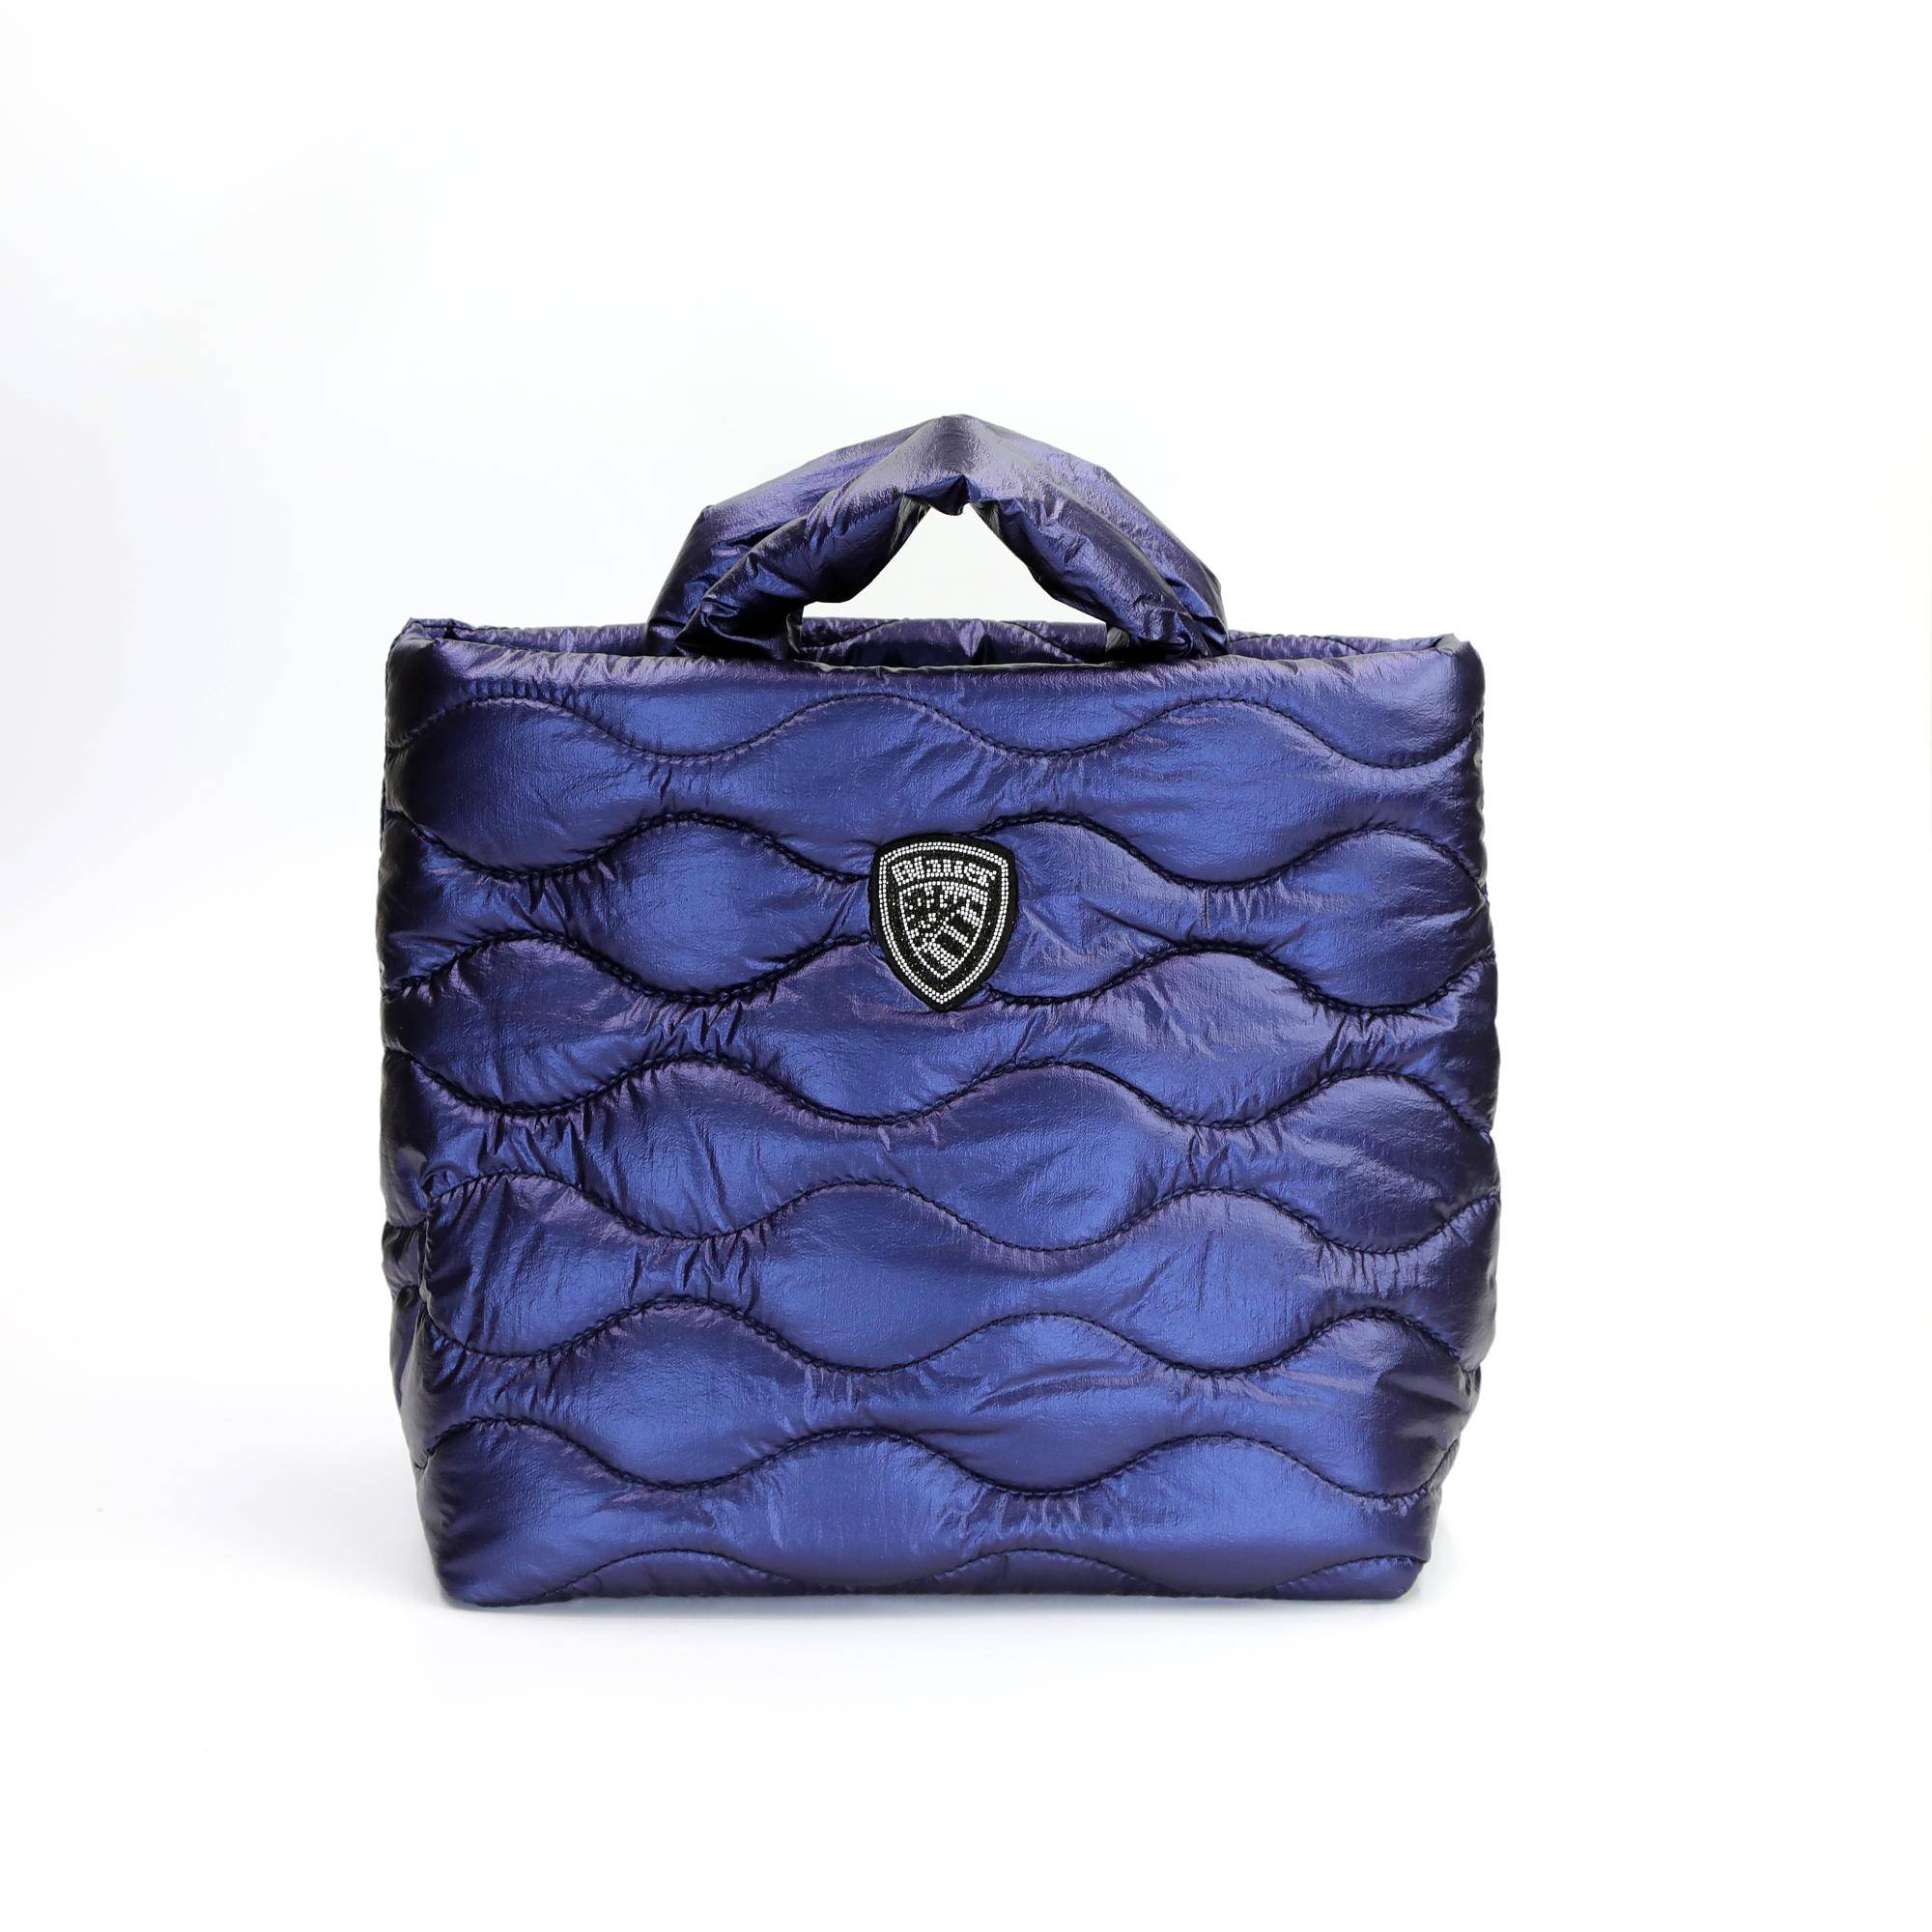 Женская сумка Blauer, синяя, цвет синий, размер ONE SIZE